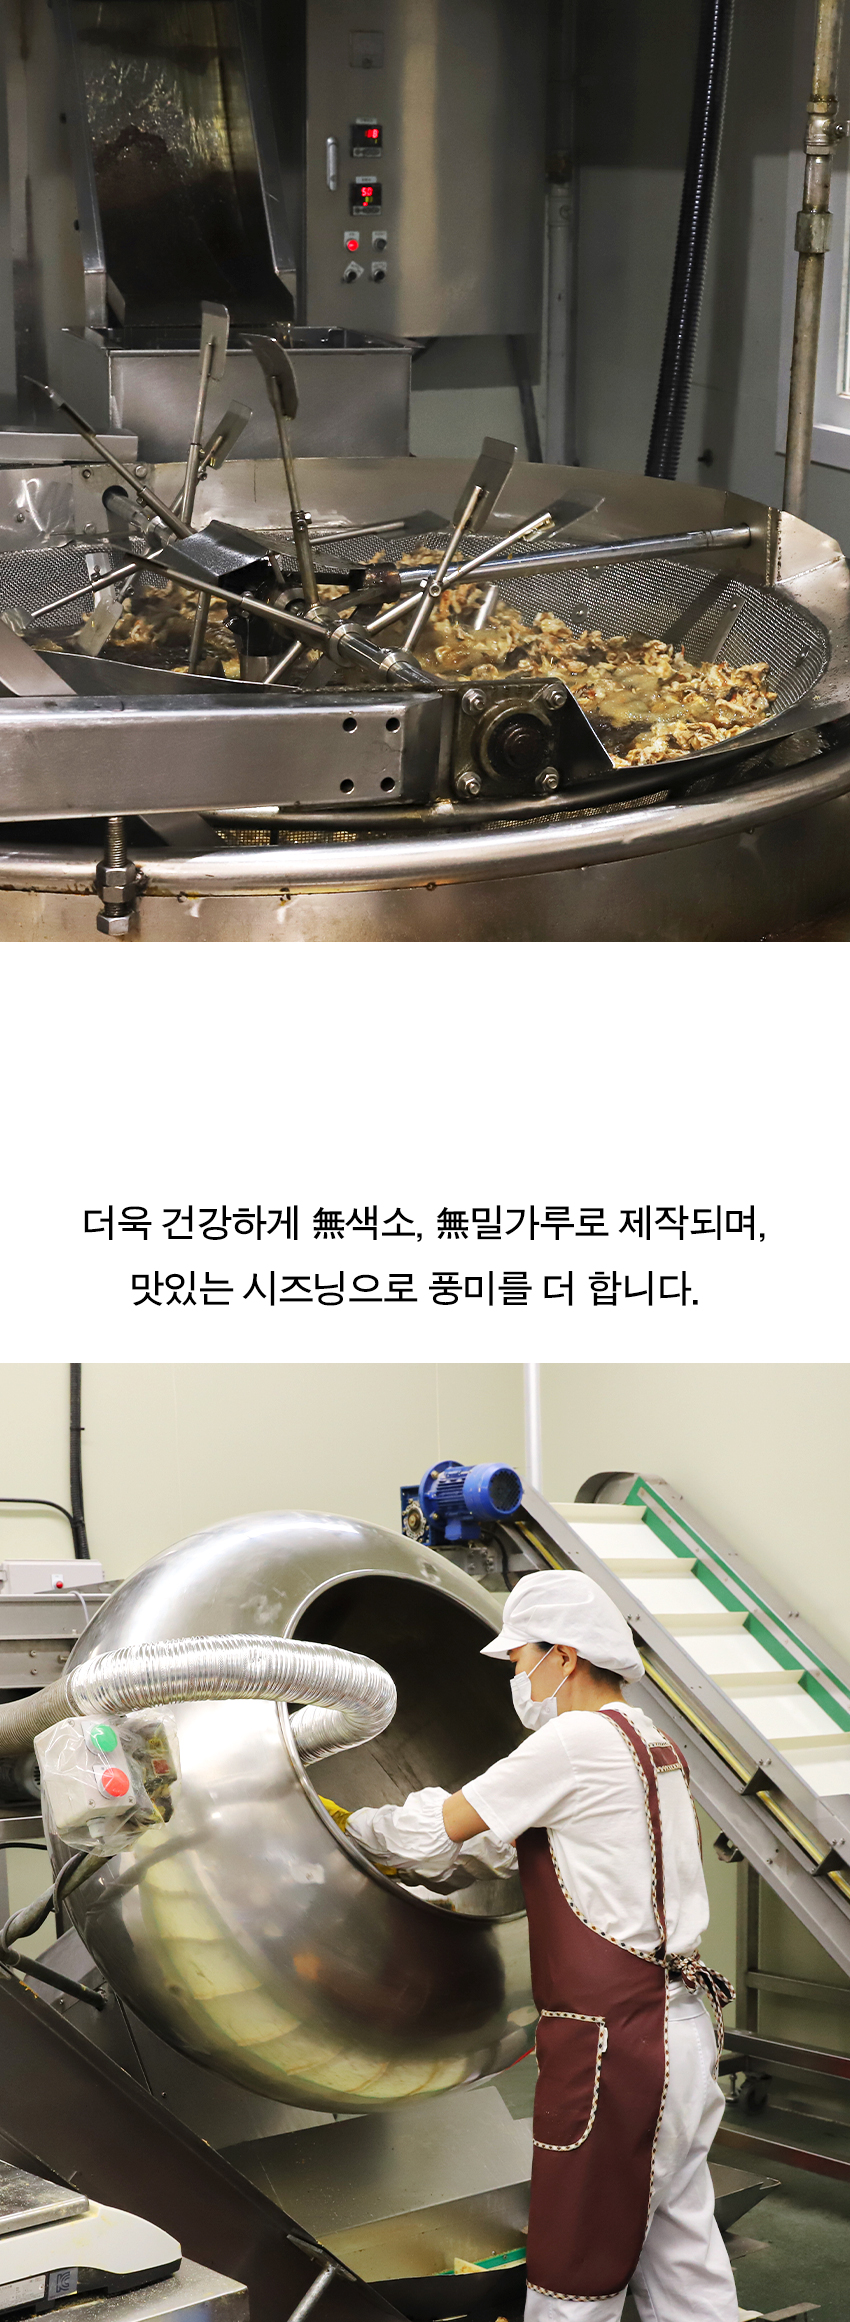 韓國食品-[자연공유] 바삭한 황태칩 (갈릭버터맛) 30g